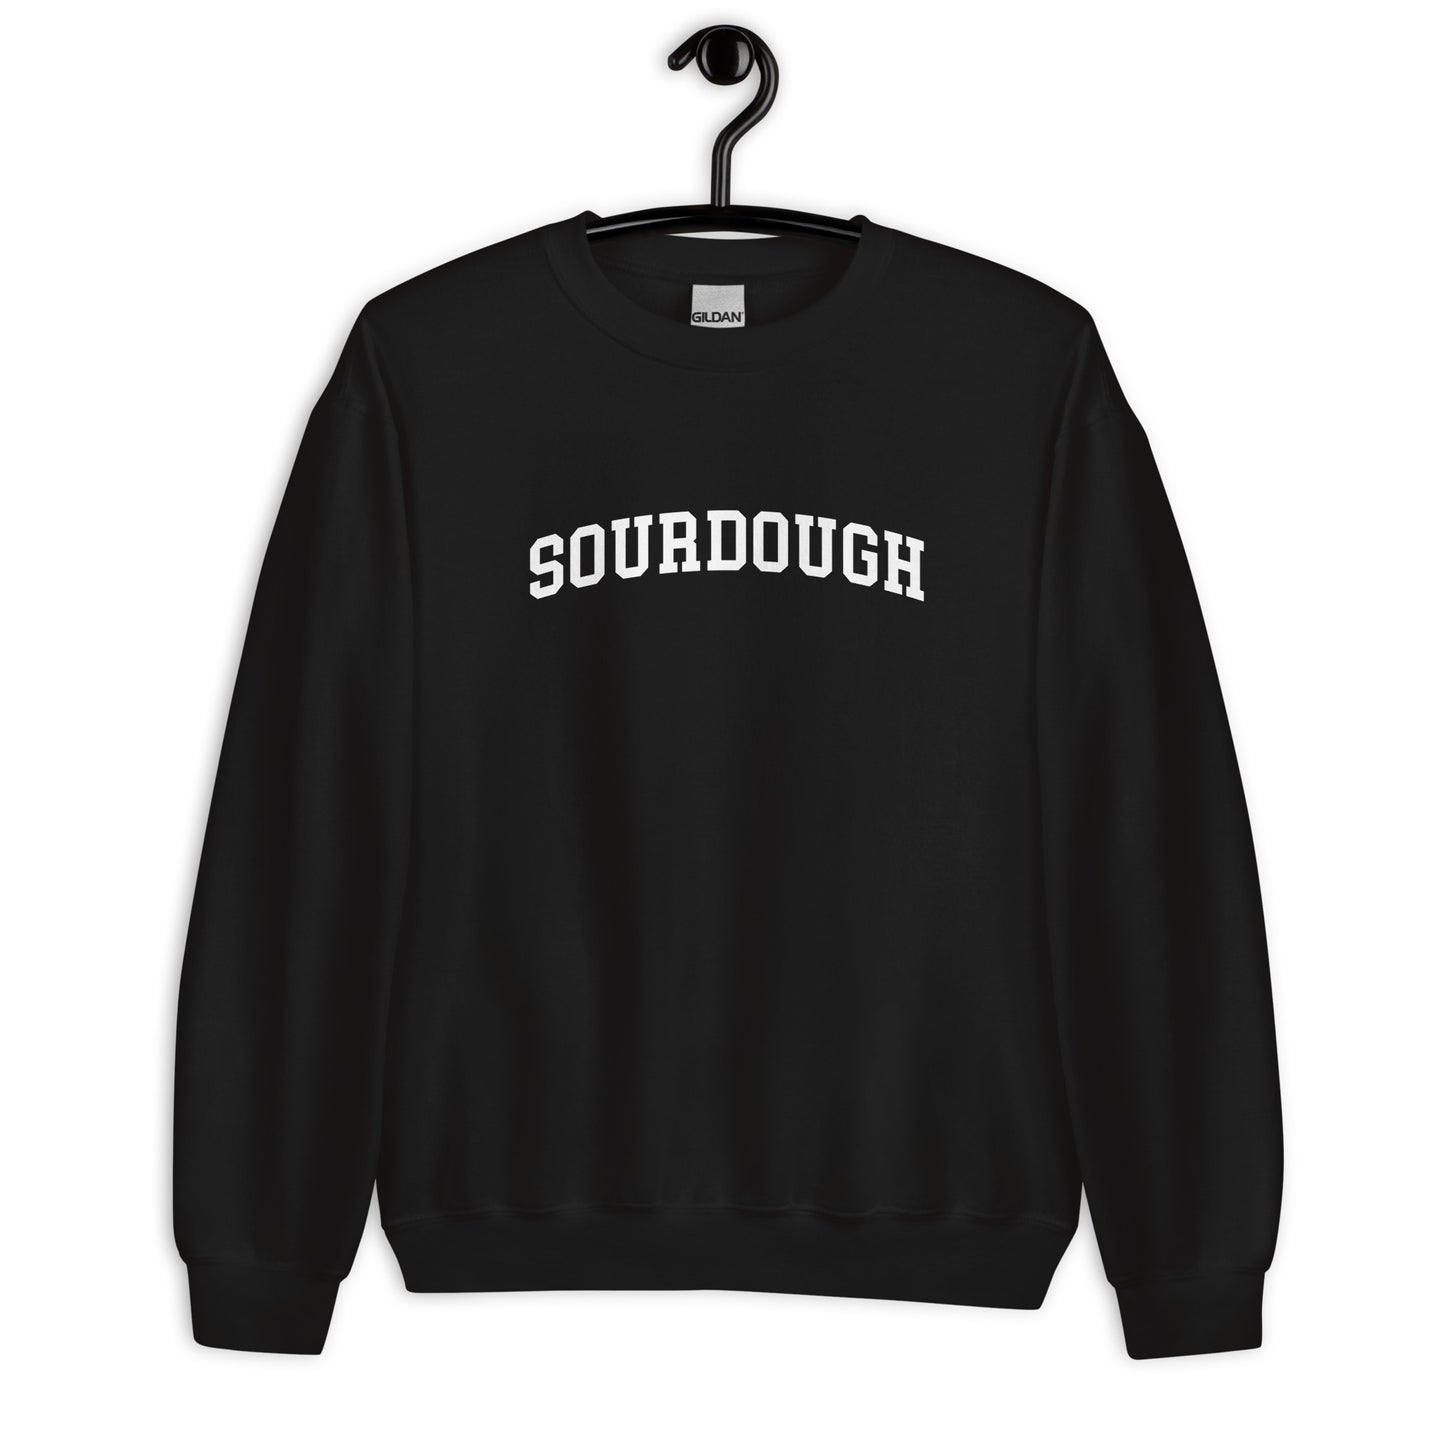 Sourdough Sweatshirt - Arched Font